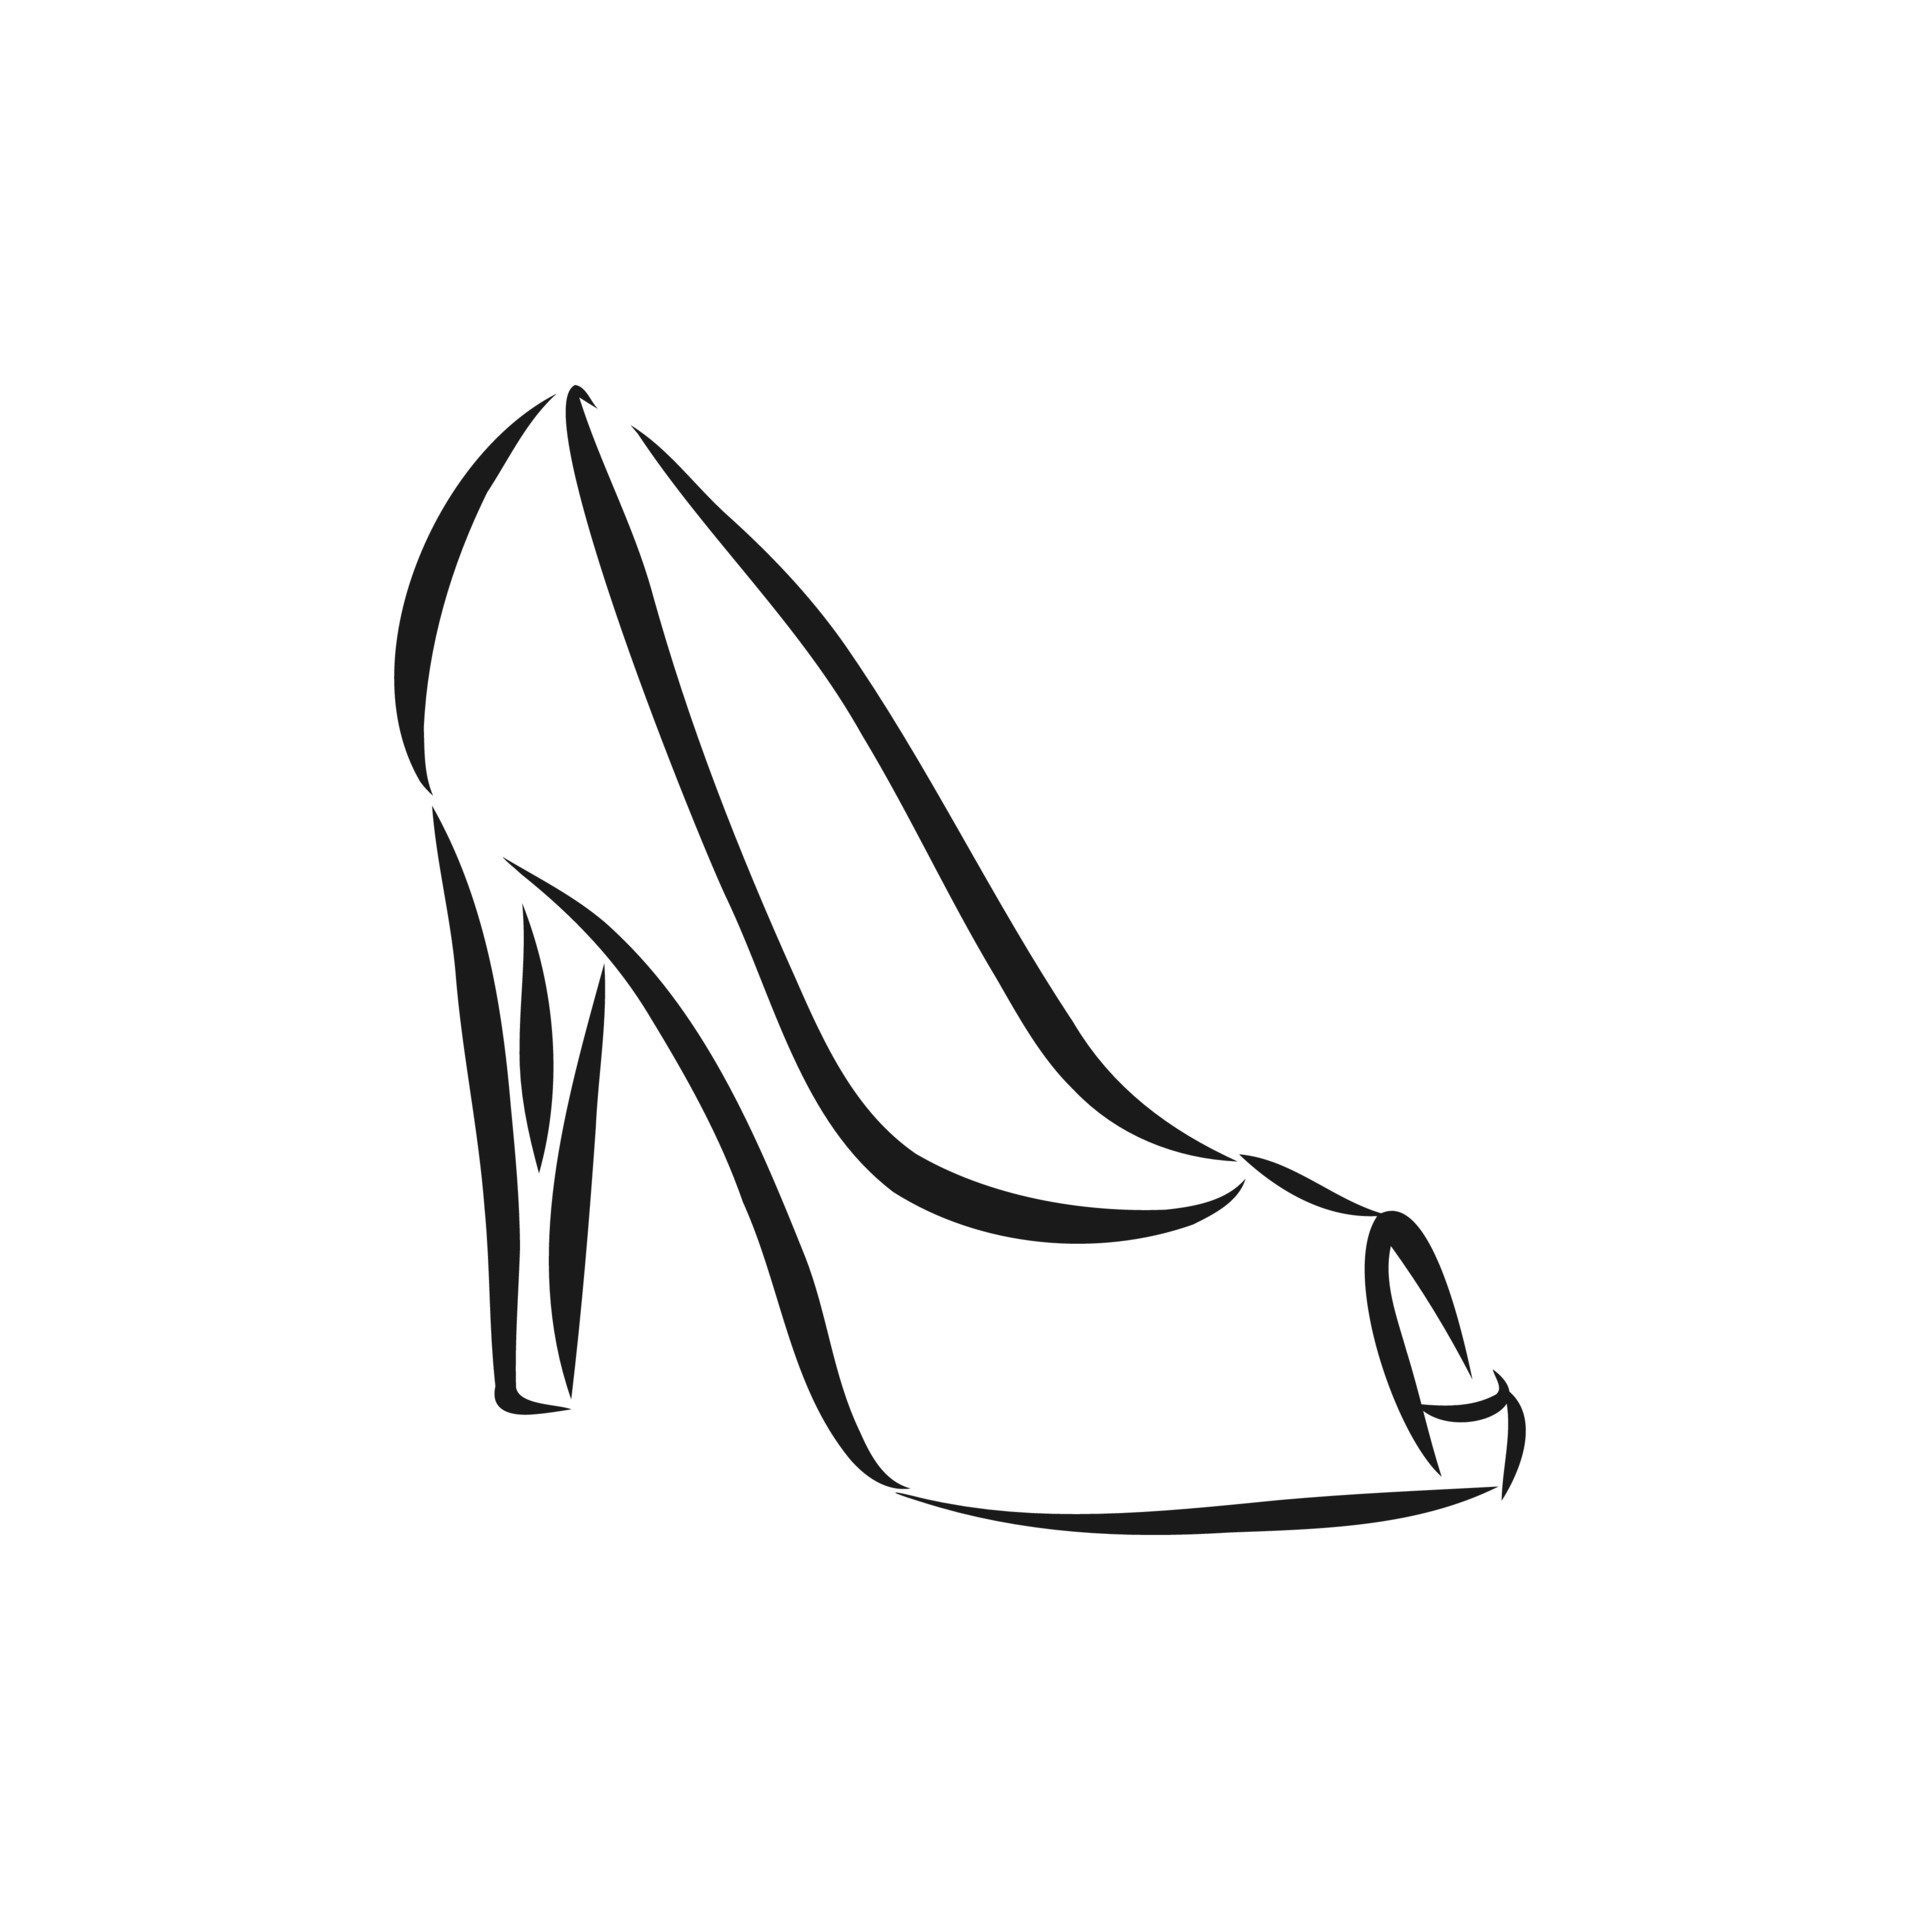 women's shoe vector sketch 8918166 Vector Art at Vecteezy